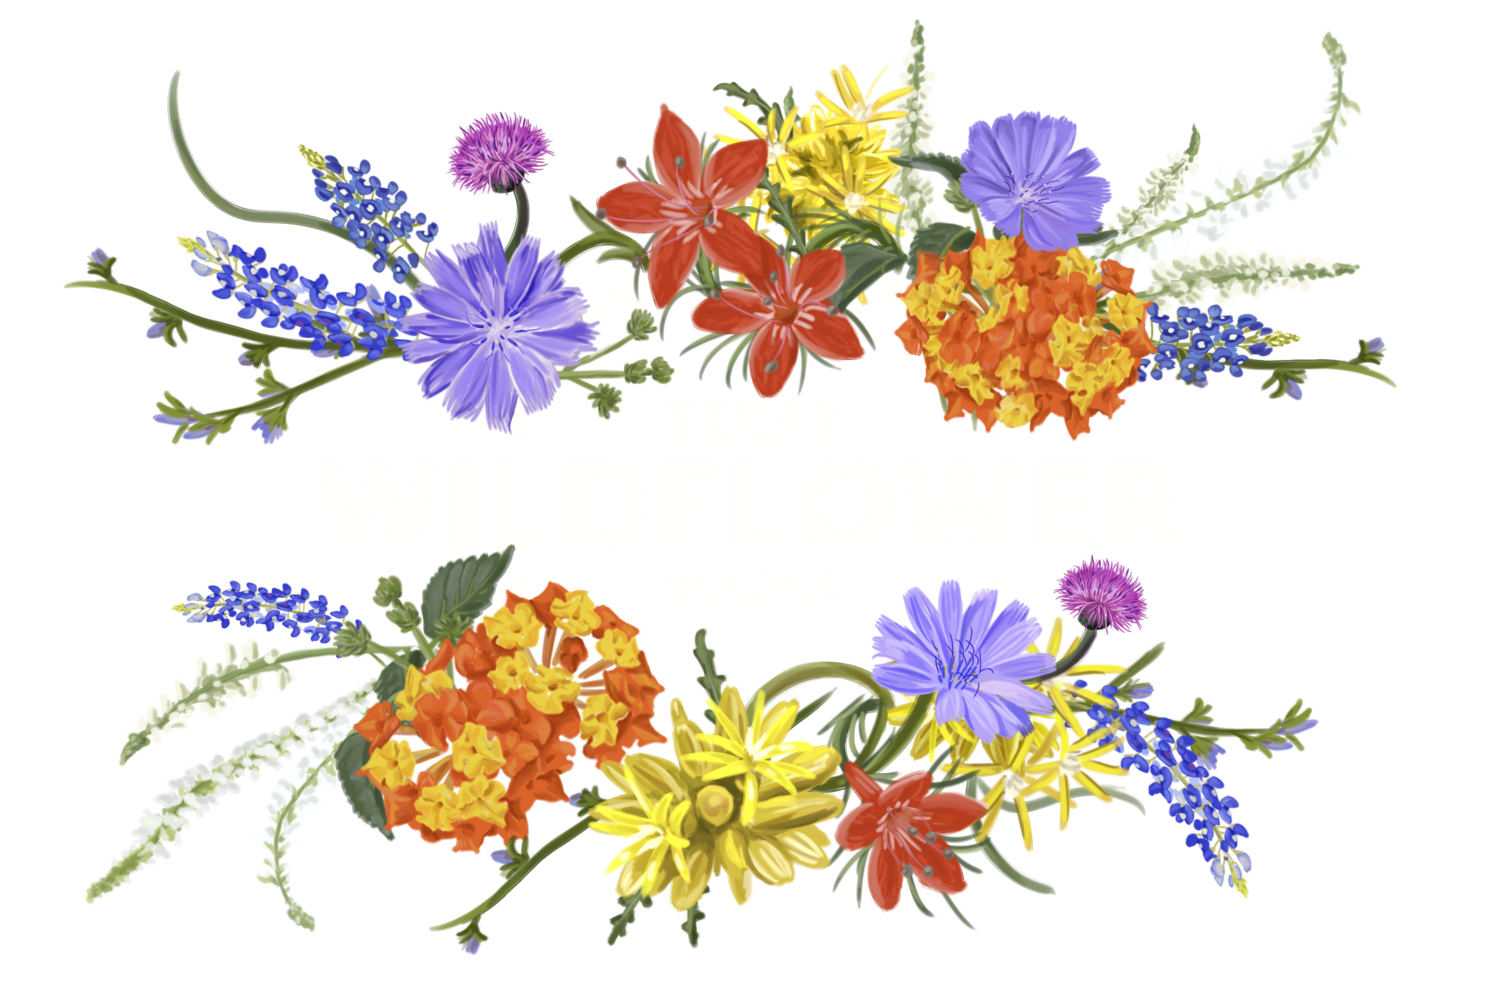 Texas Wildflower Vodka